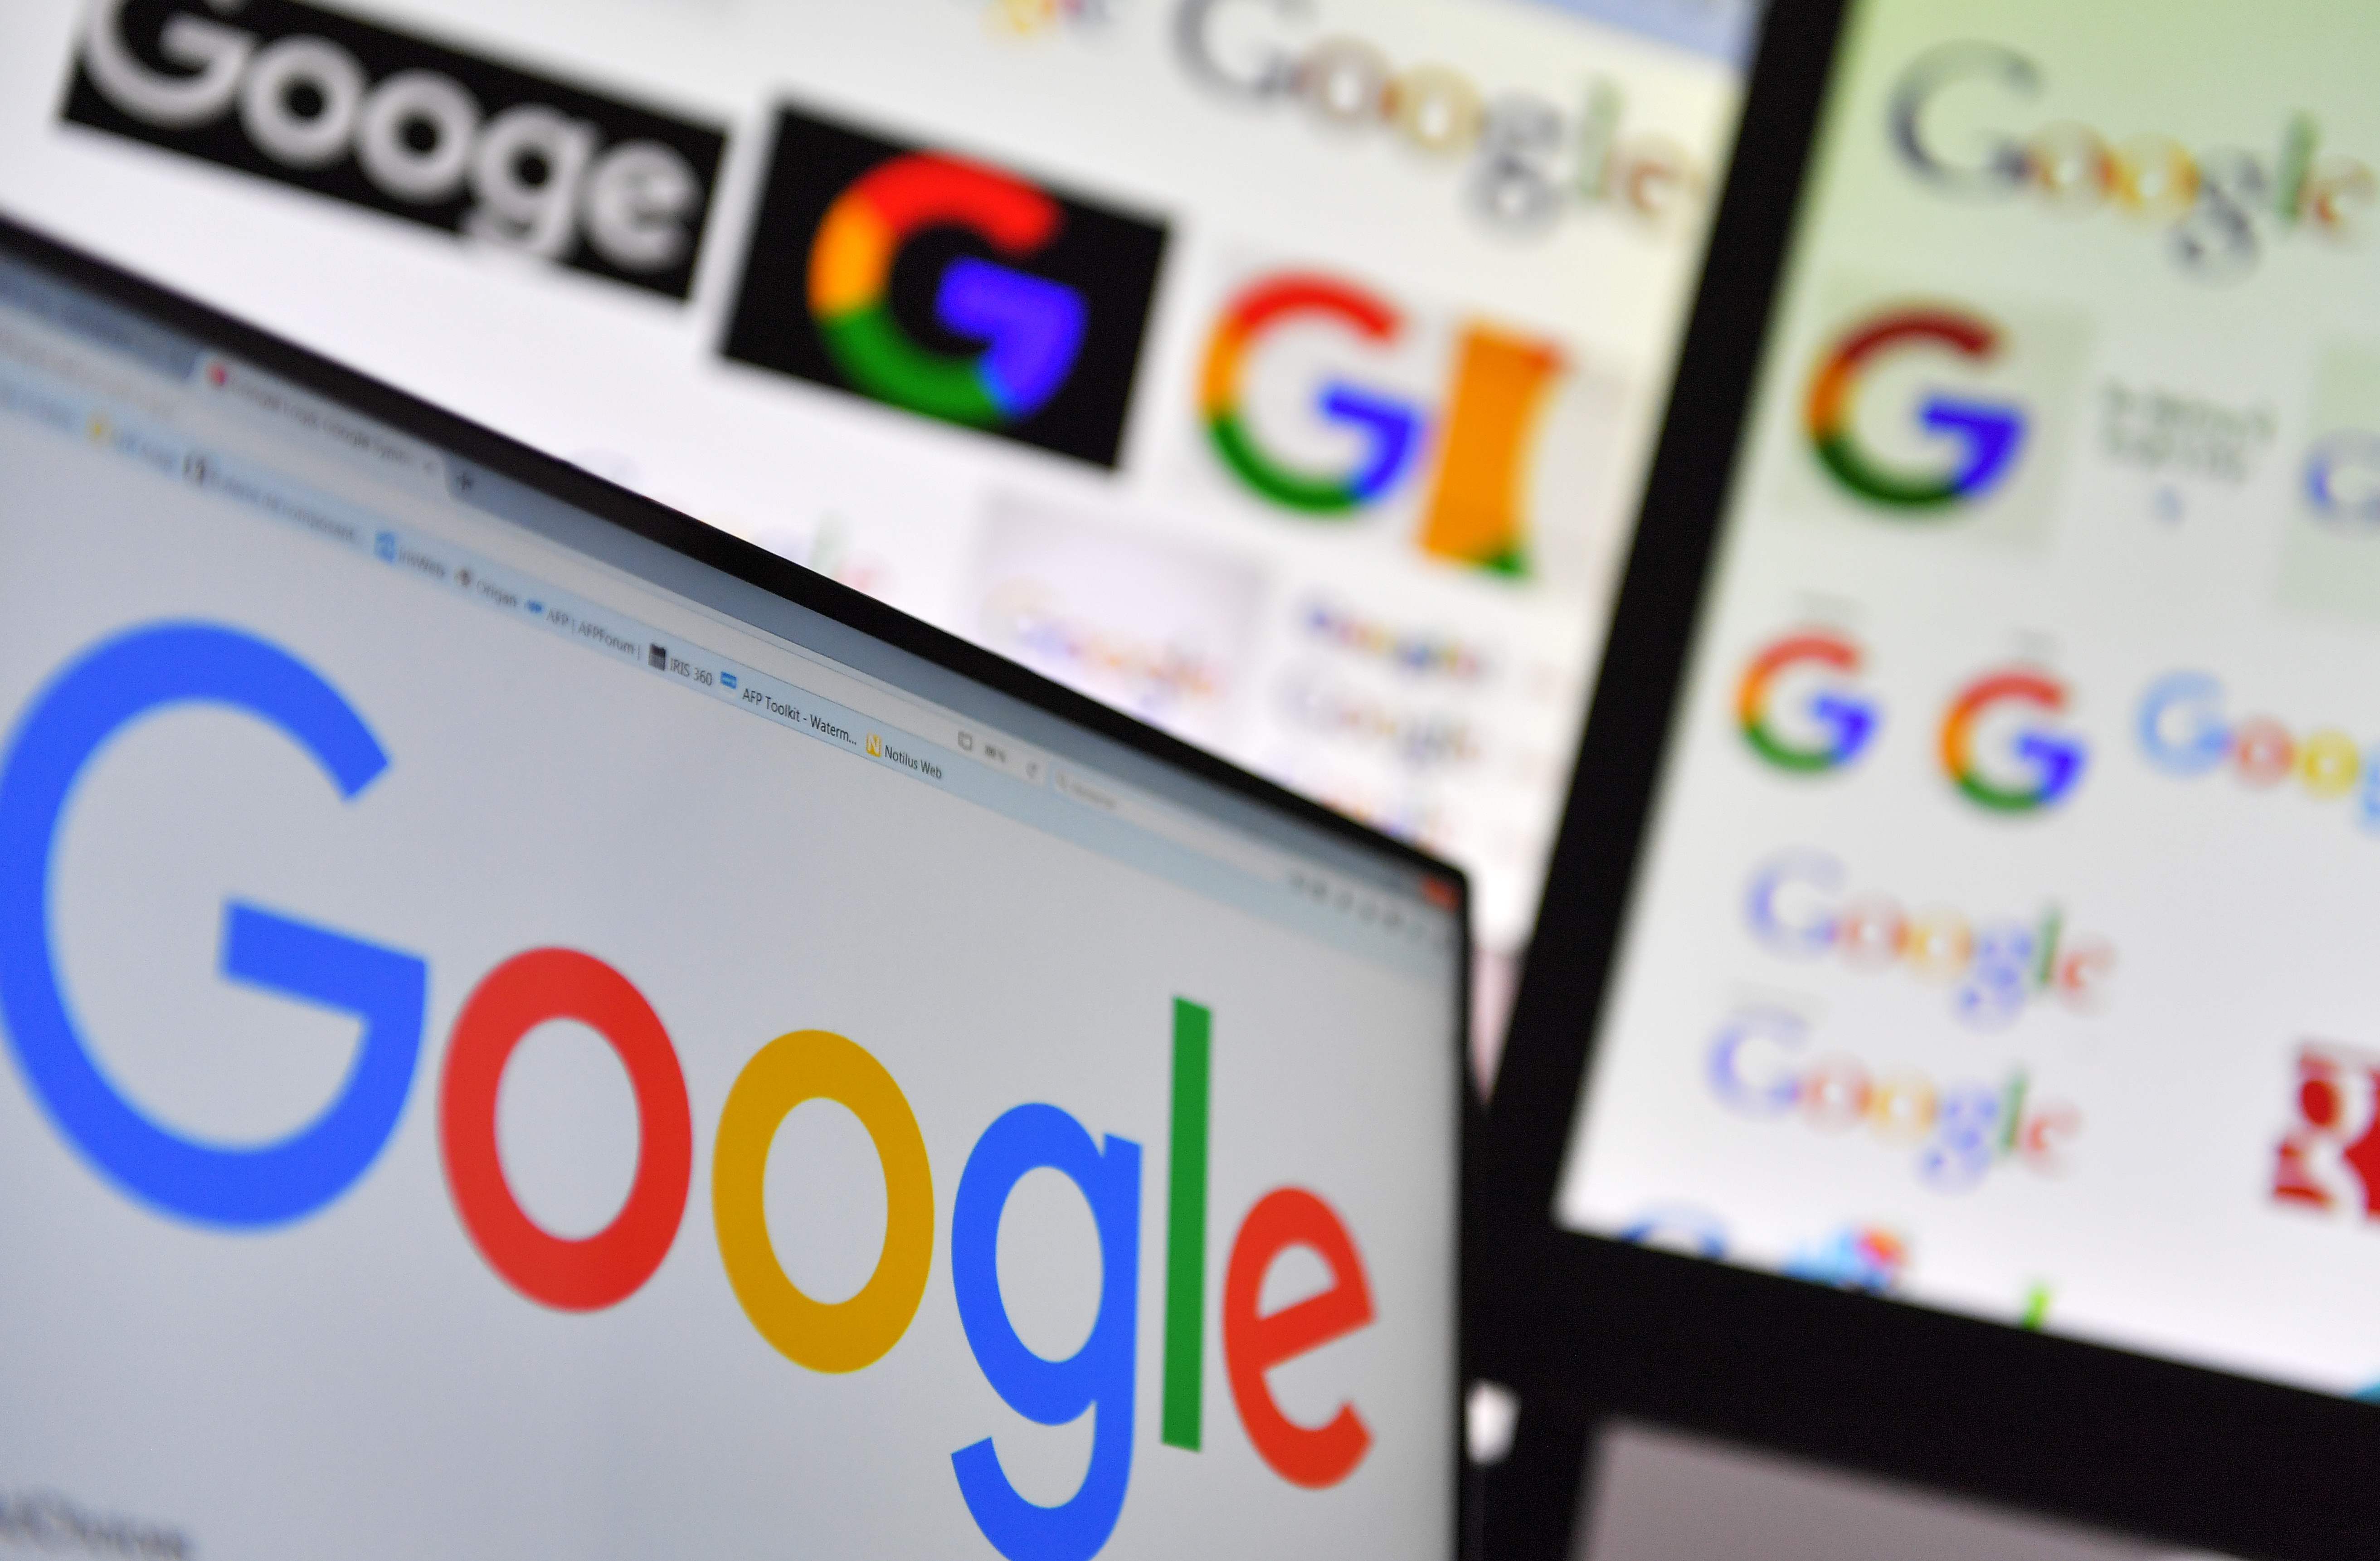 Google anunció que en poco tiempo estará disponible el Google Assistant que leerá en voz alta los contenidos web para ayudar a personas con problemas de visión. (Foto Prensa Libre: Hemeroteca)